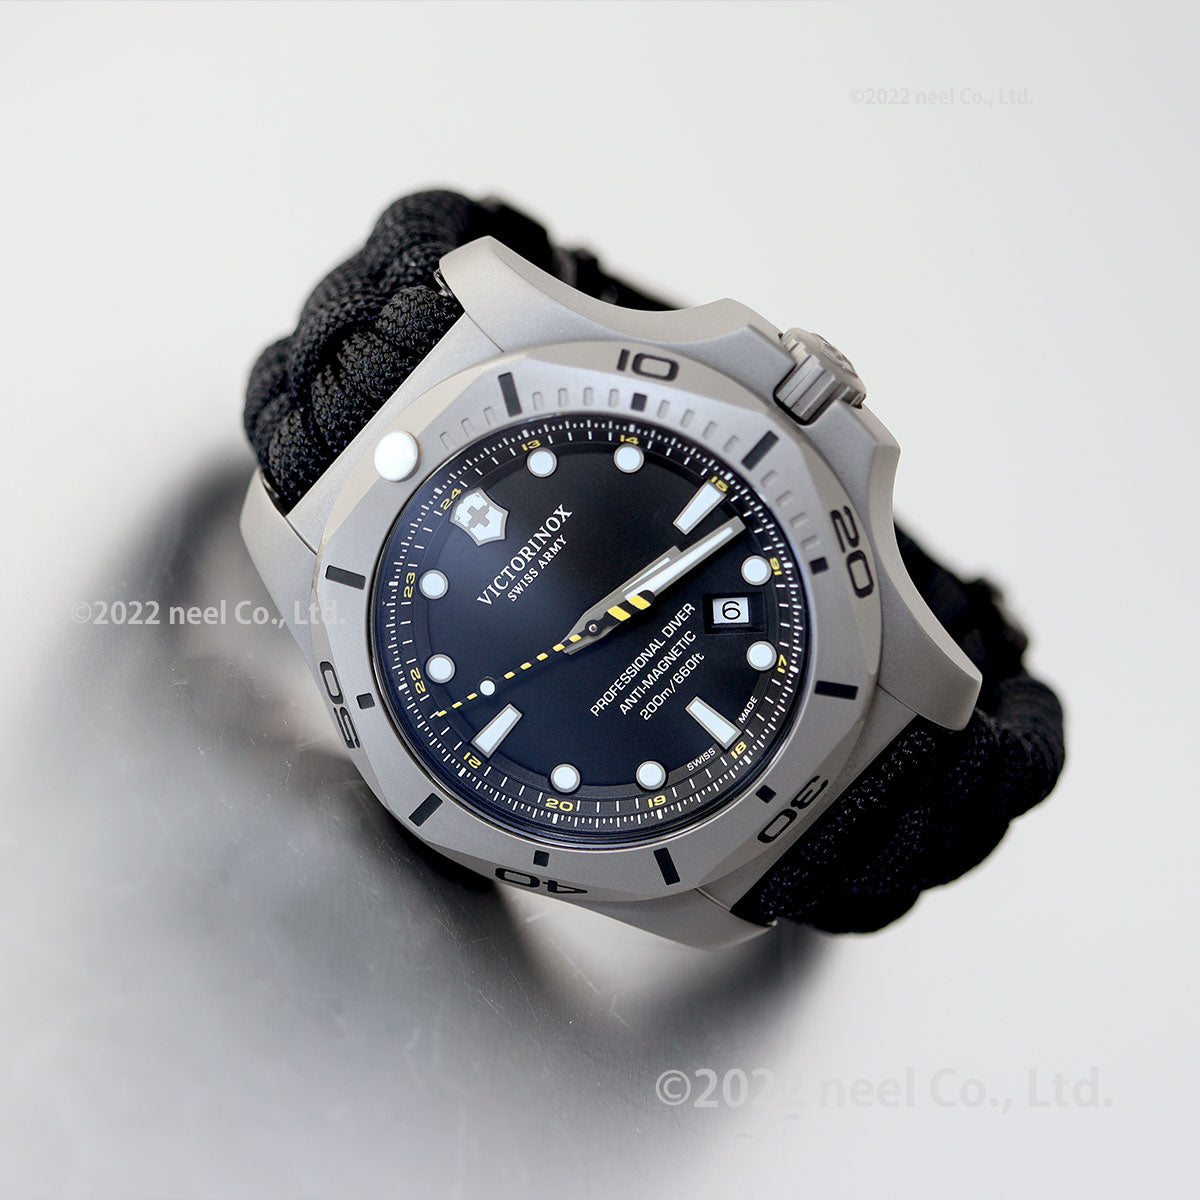 ビクトリノックス VICTORINOX イノックス I.N.O.X. 腕時計 メンズ プロフェッショナル ダイバー タイタニウム ブラック 241812.2